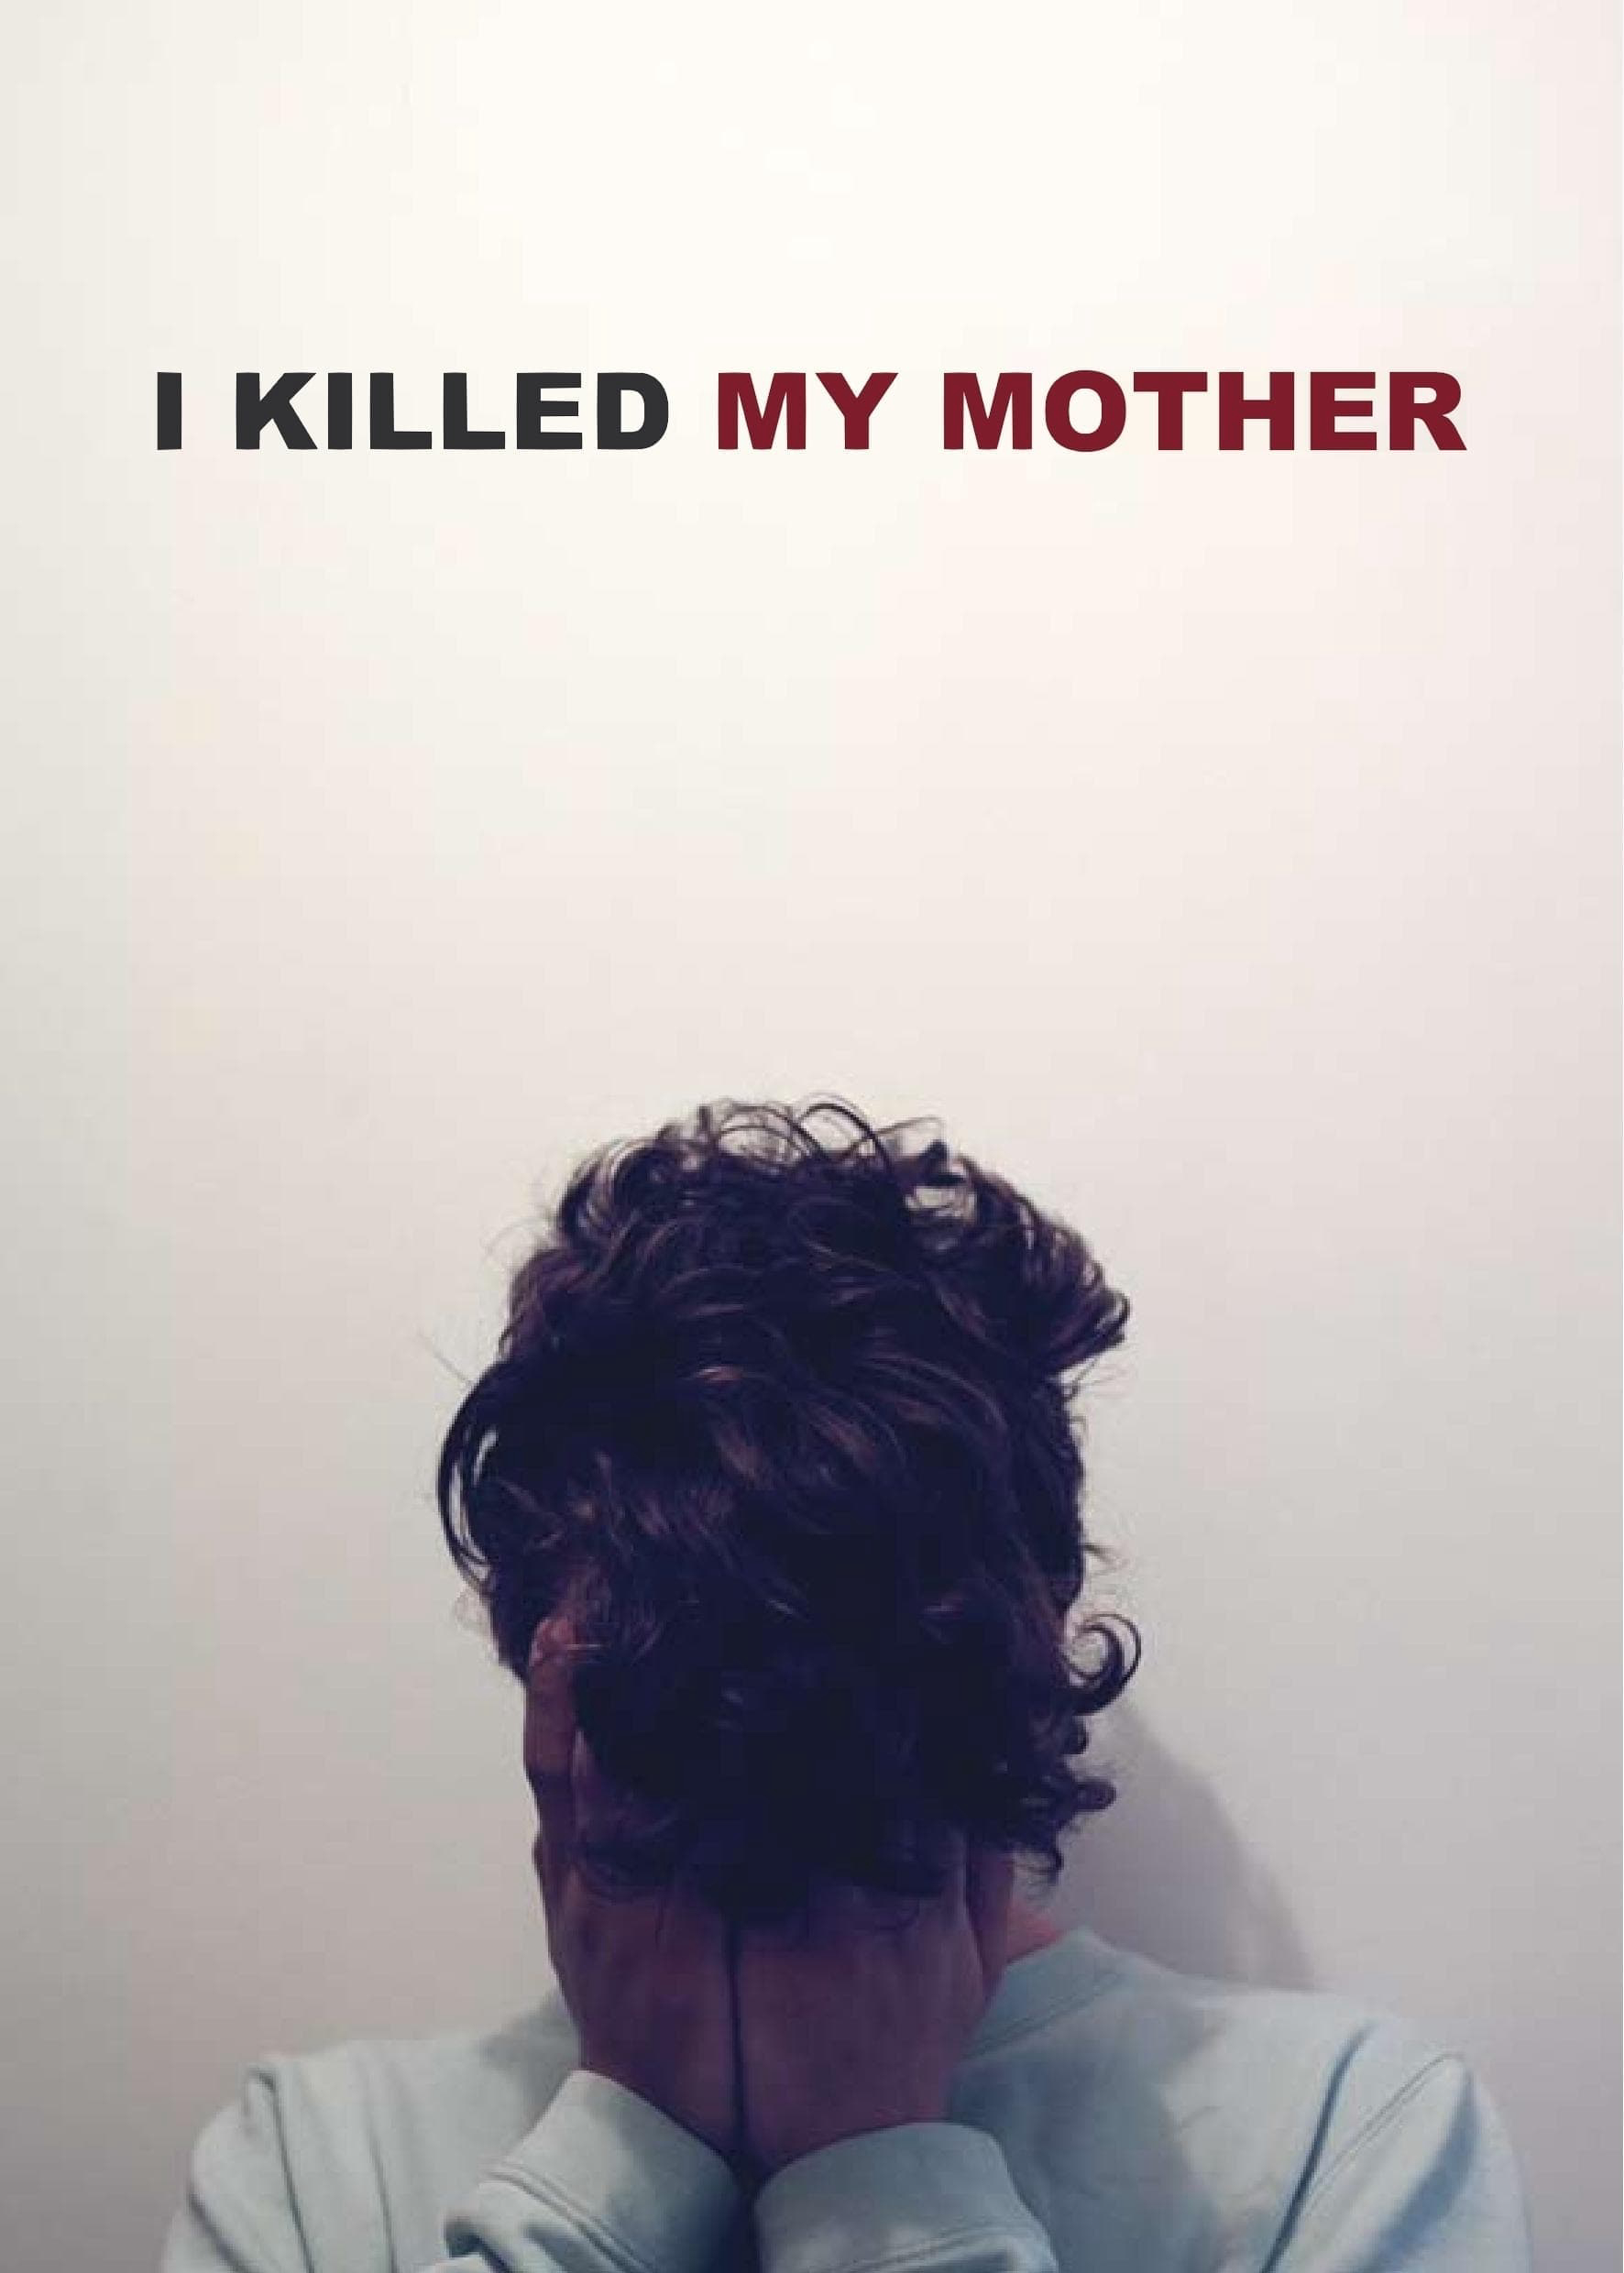  Tôi Đã Giết Mẹ Tôi - I Killed My Mother